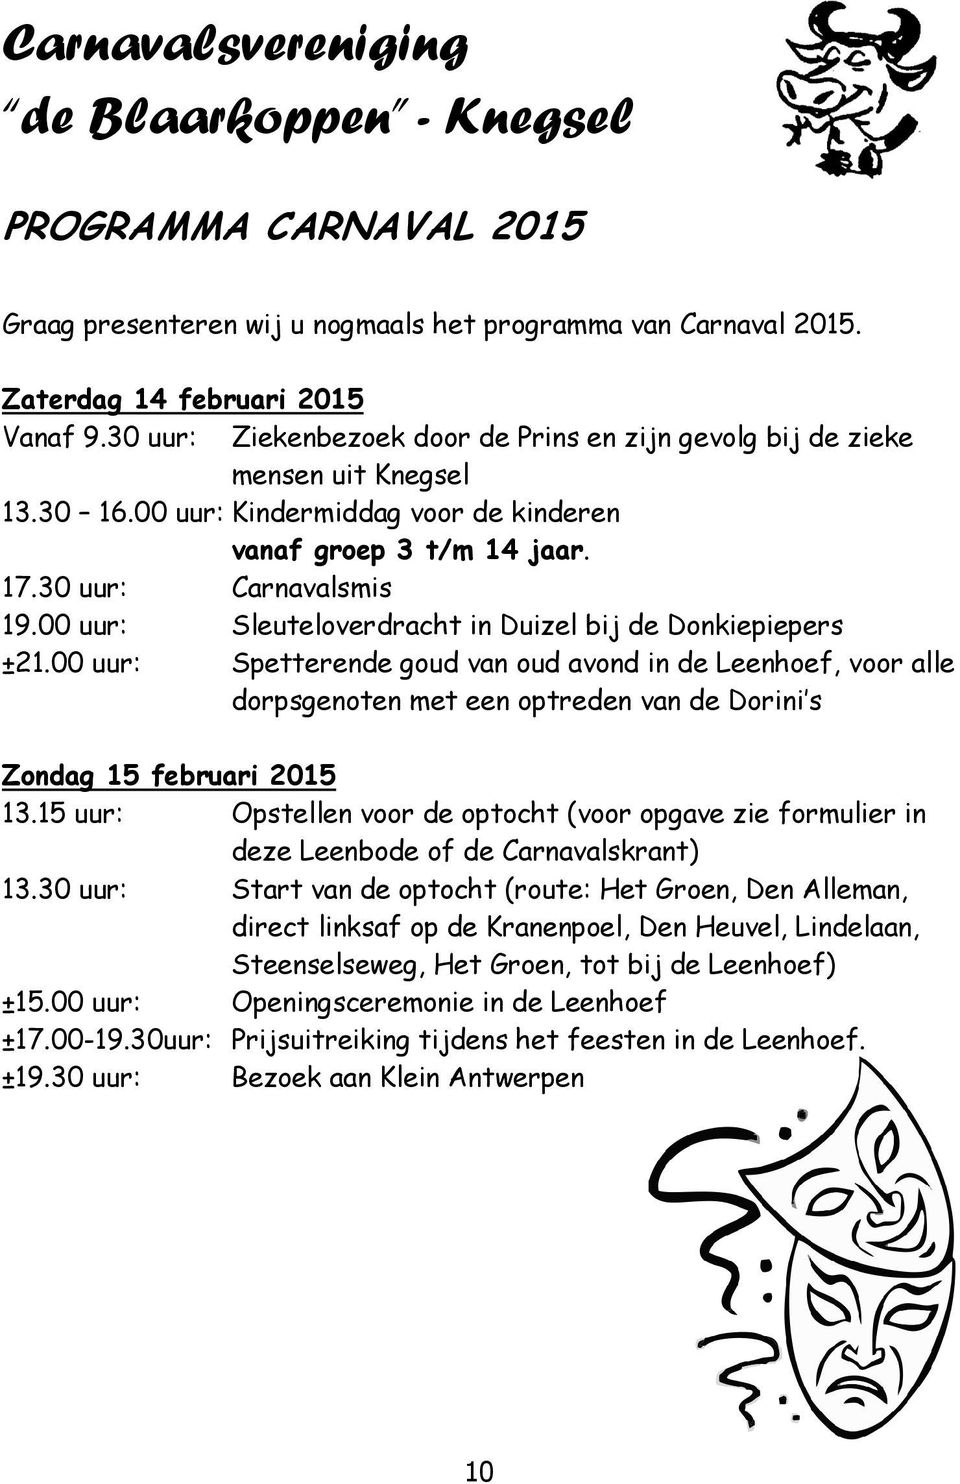 00 uur: Sleuteloverdracht in Duizel bij de Donkiepiepers ±21.00 uur: Spetterende goud van oud avond in de Leenhoef, voor alle dorpsgenoten met een optreden van de Dorini s Zondag 15 februari 2015 13.